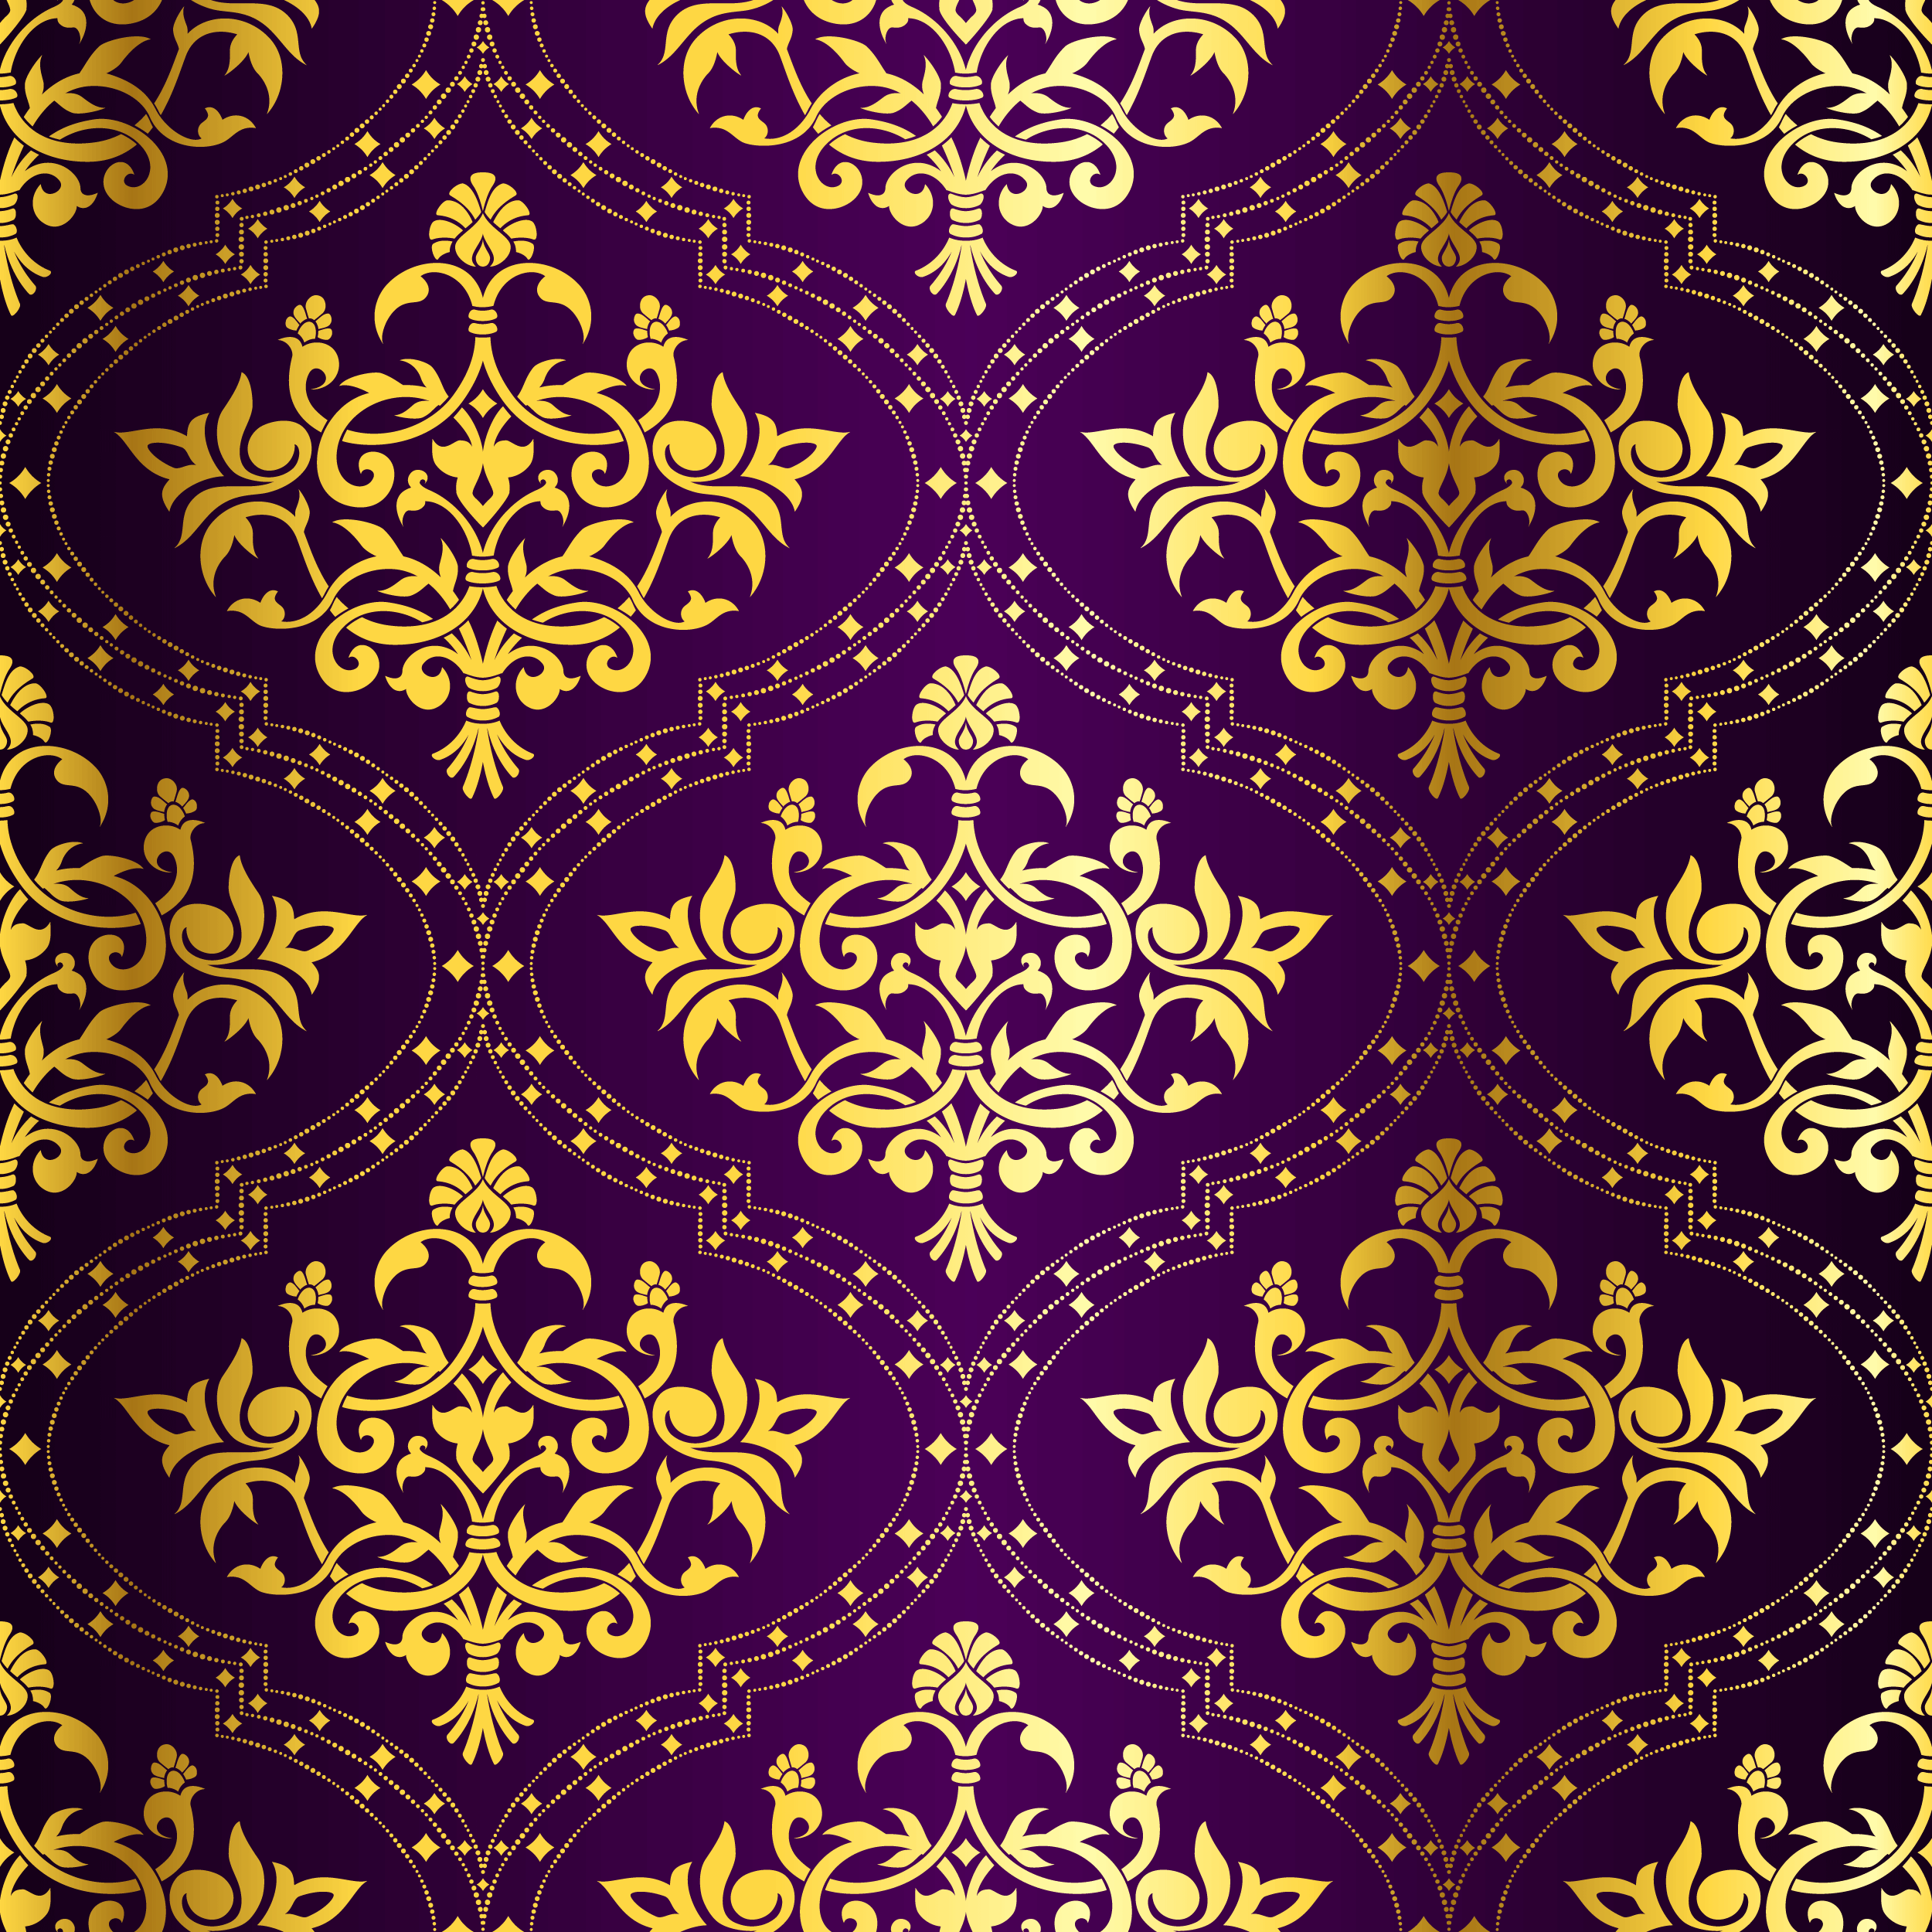 壁紙 背景イラスト 花の模様 柄 パターン No 353 エレガント 装飾 金色